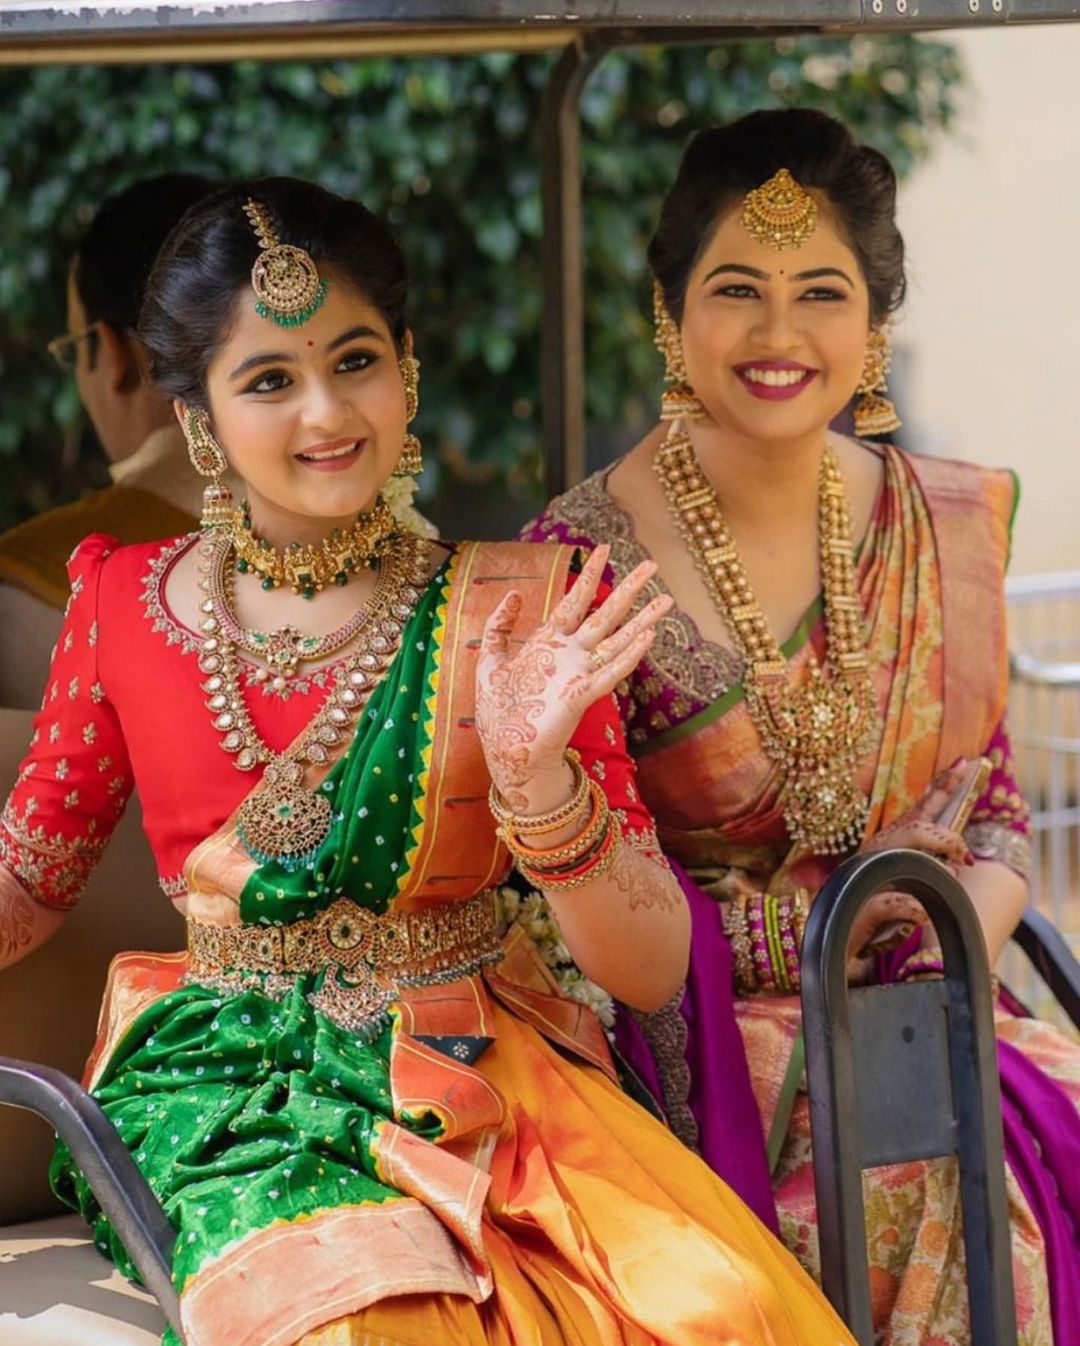 South Indian's Half-Saree Ritual: Young Girls Acing Manish ...